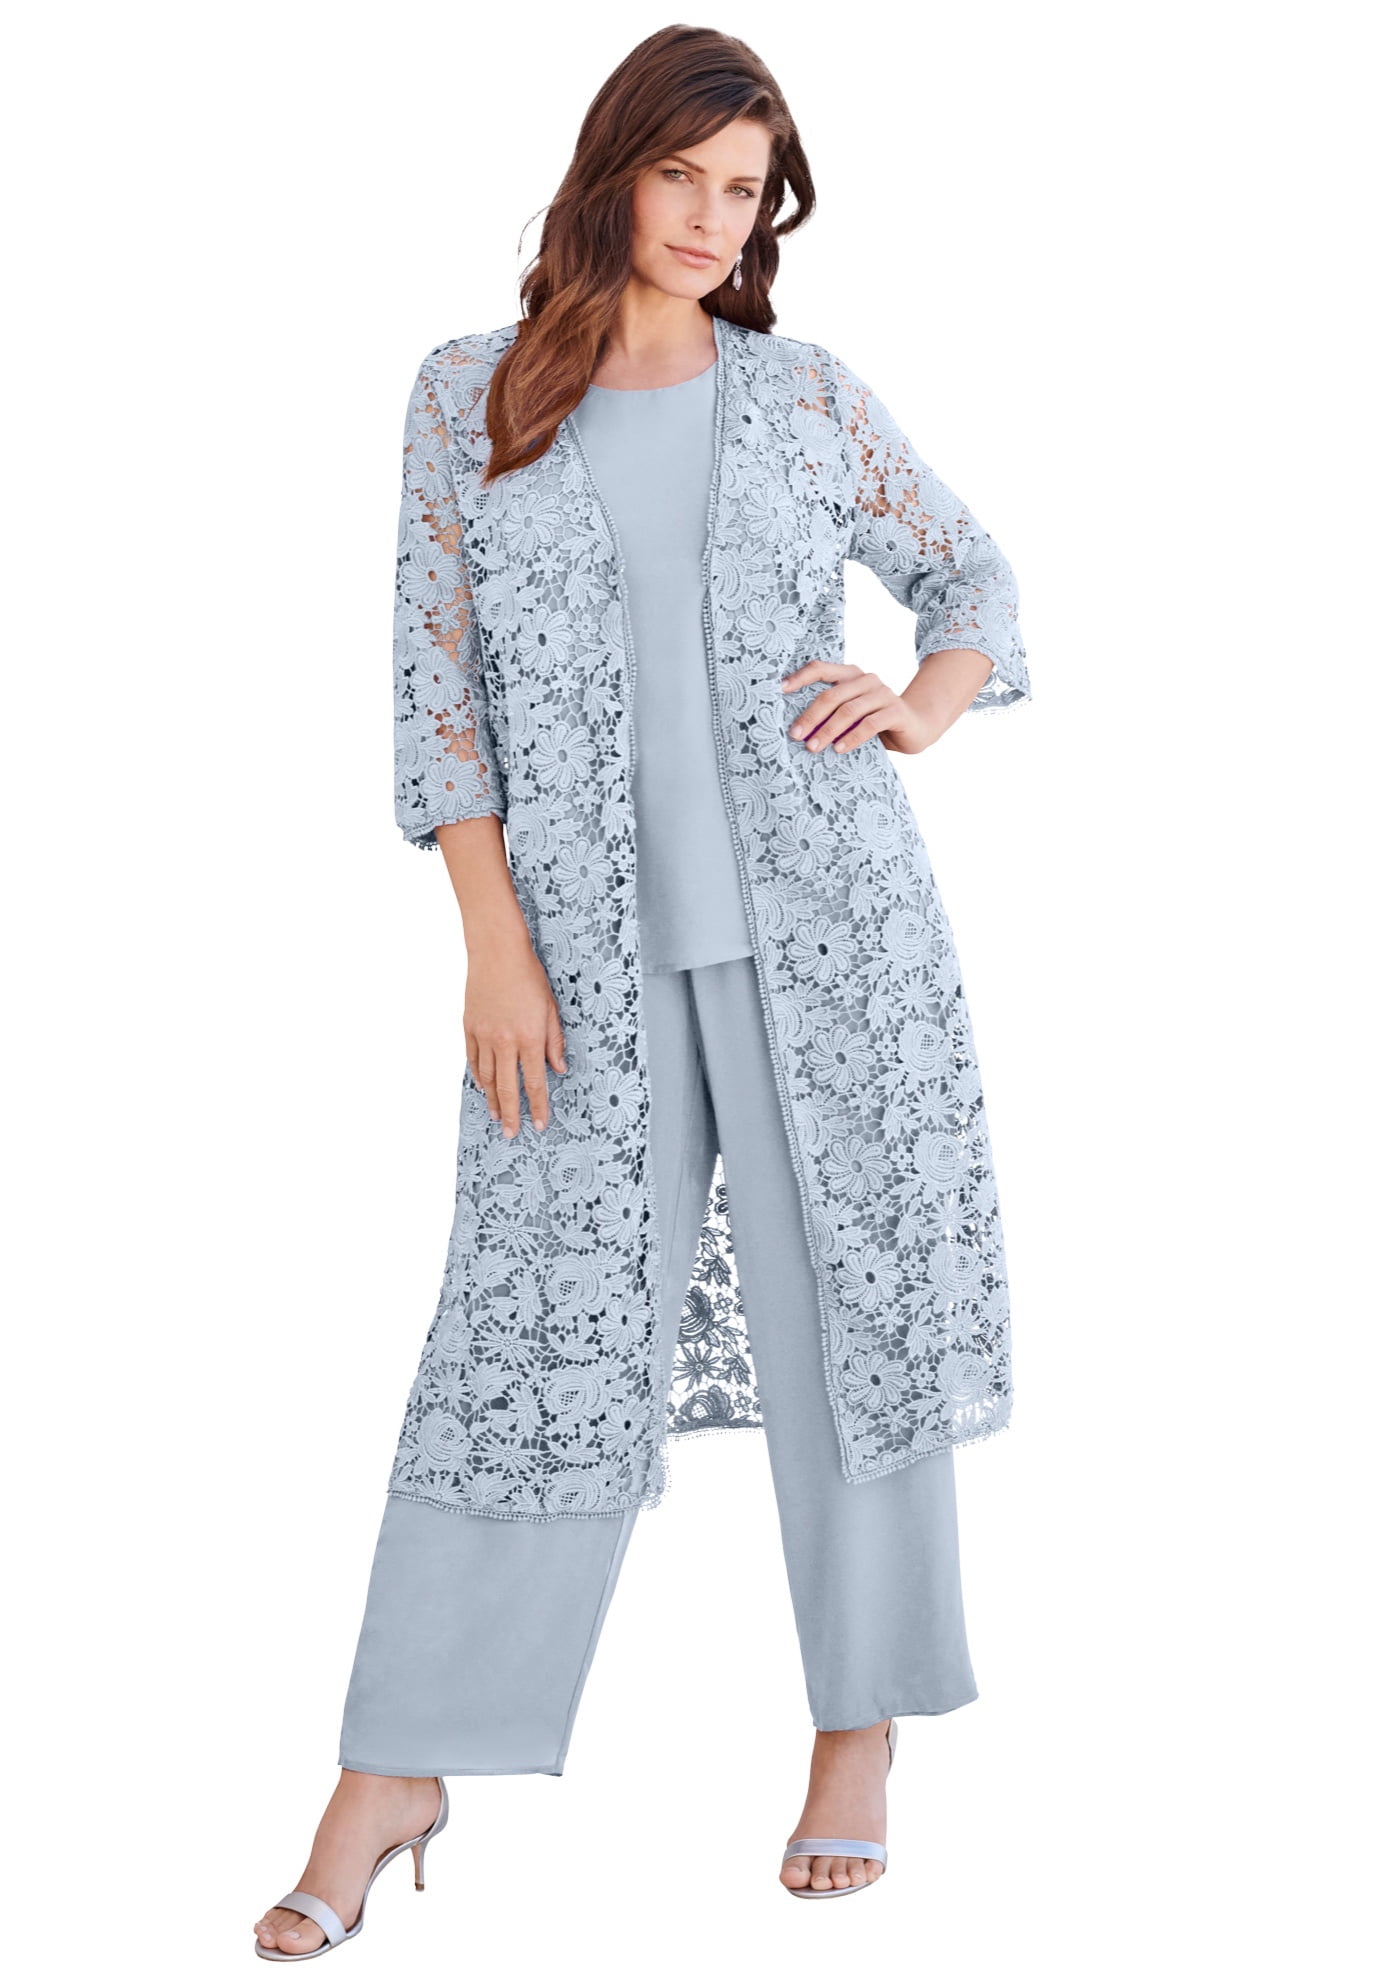 Roaman's Women's Plus Size Three-Piece Lace Duster & Pant Suit